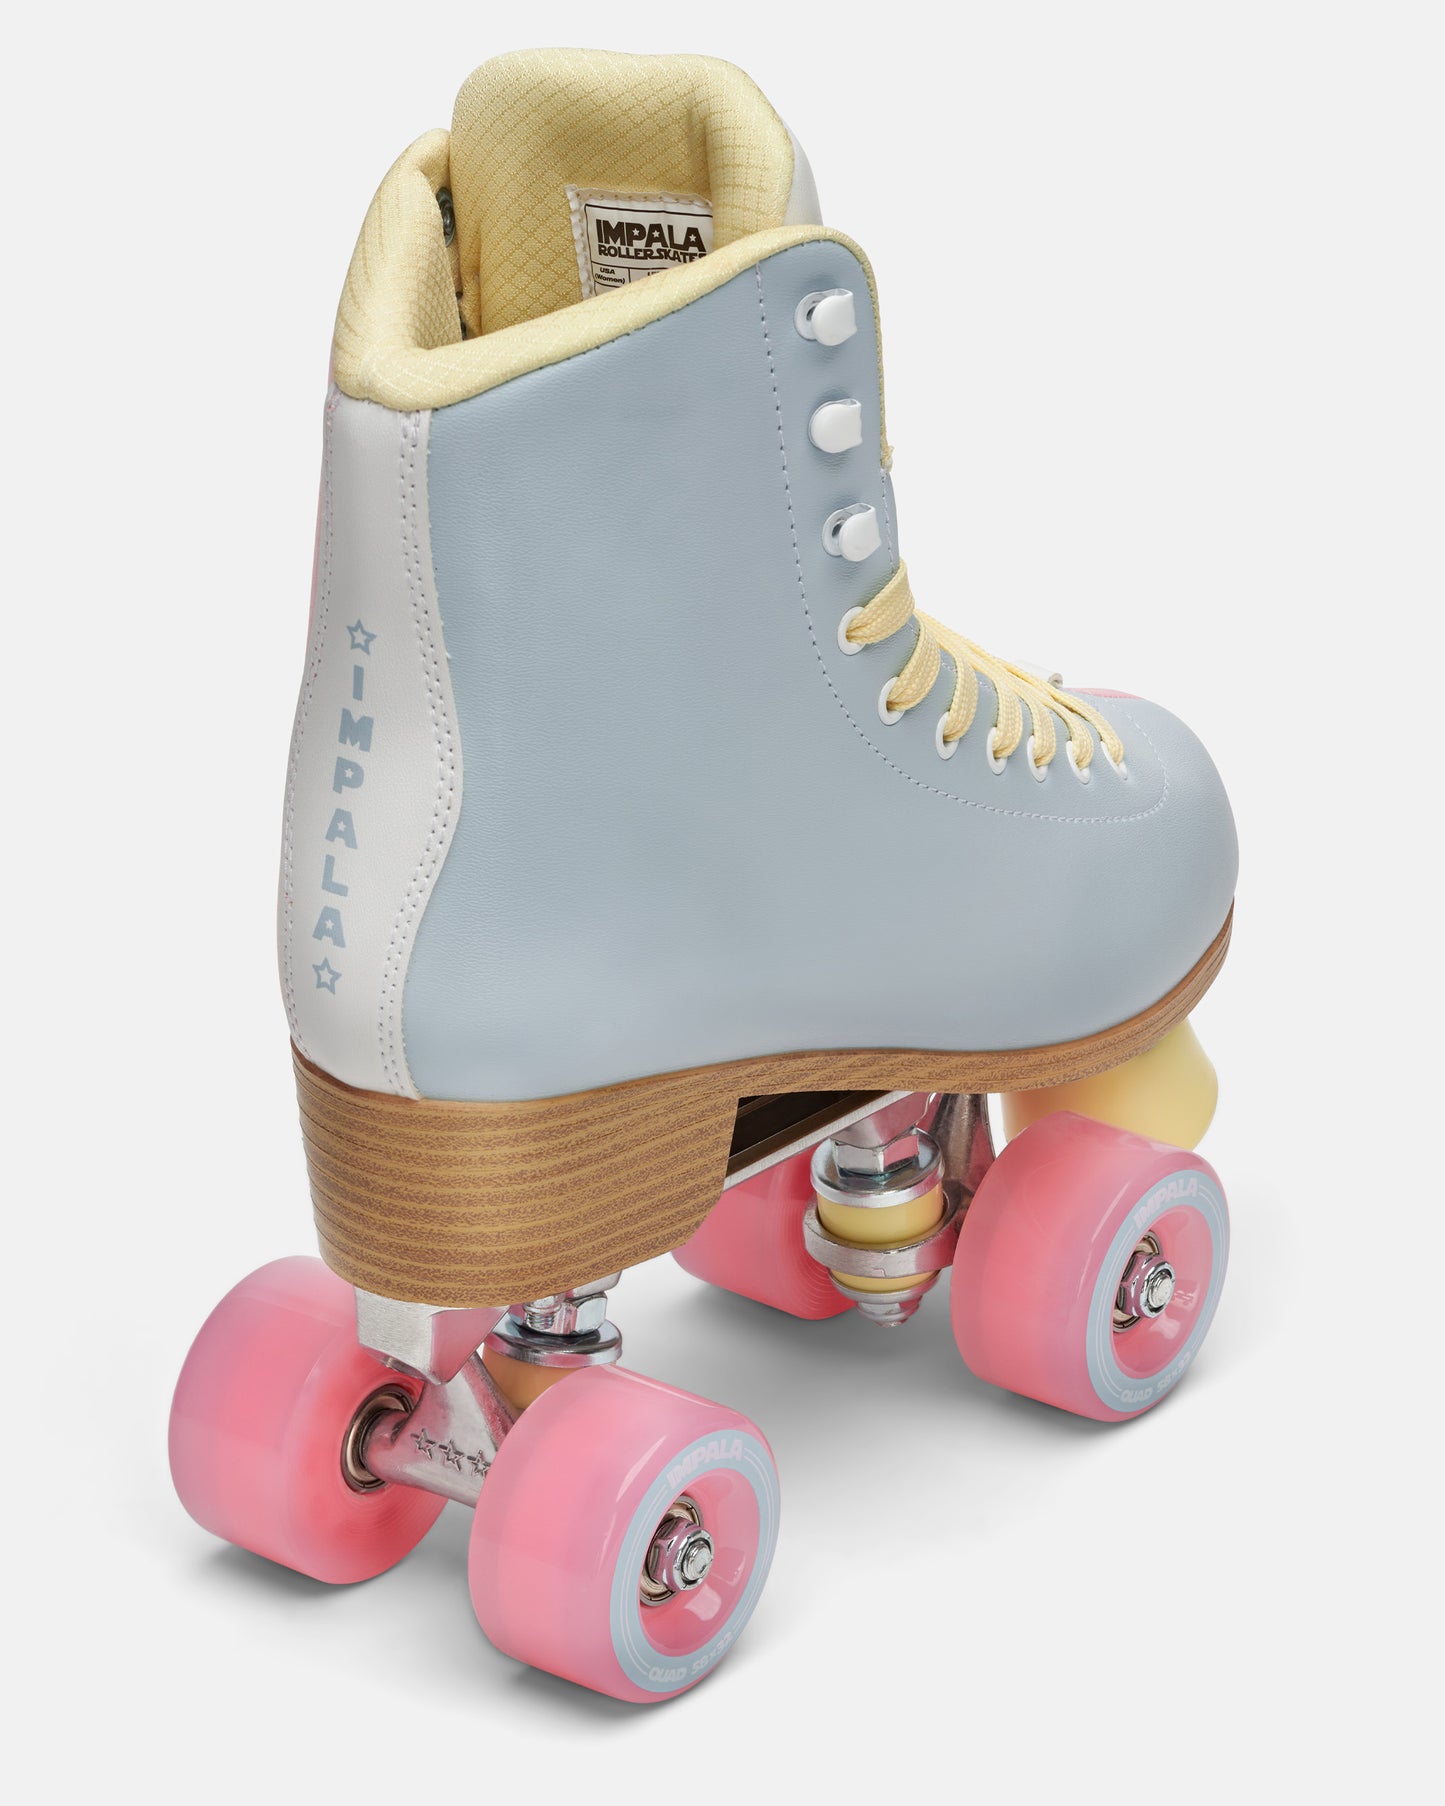 Impala Roller Skates - Blue/Pink Split